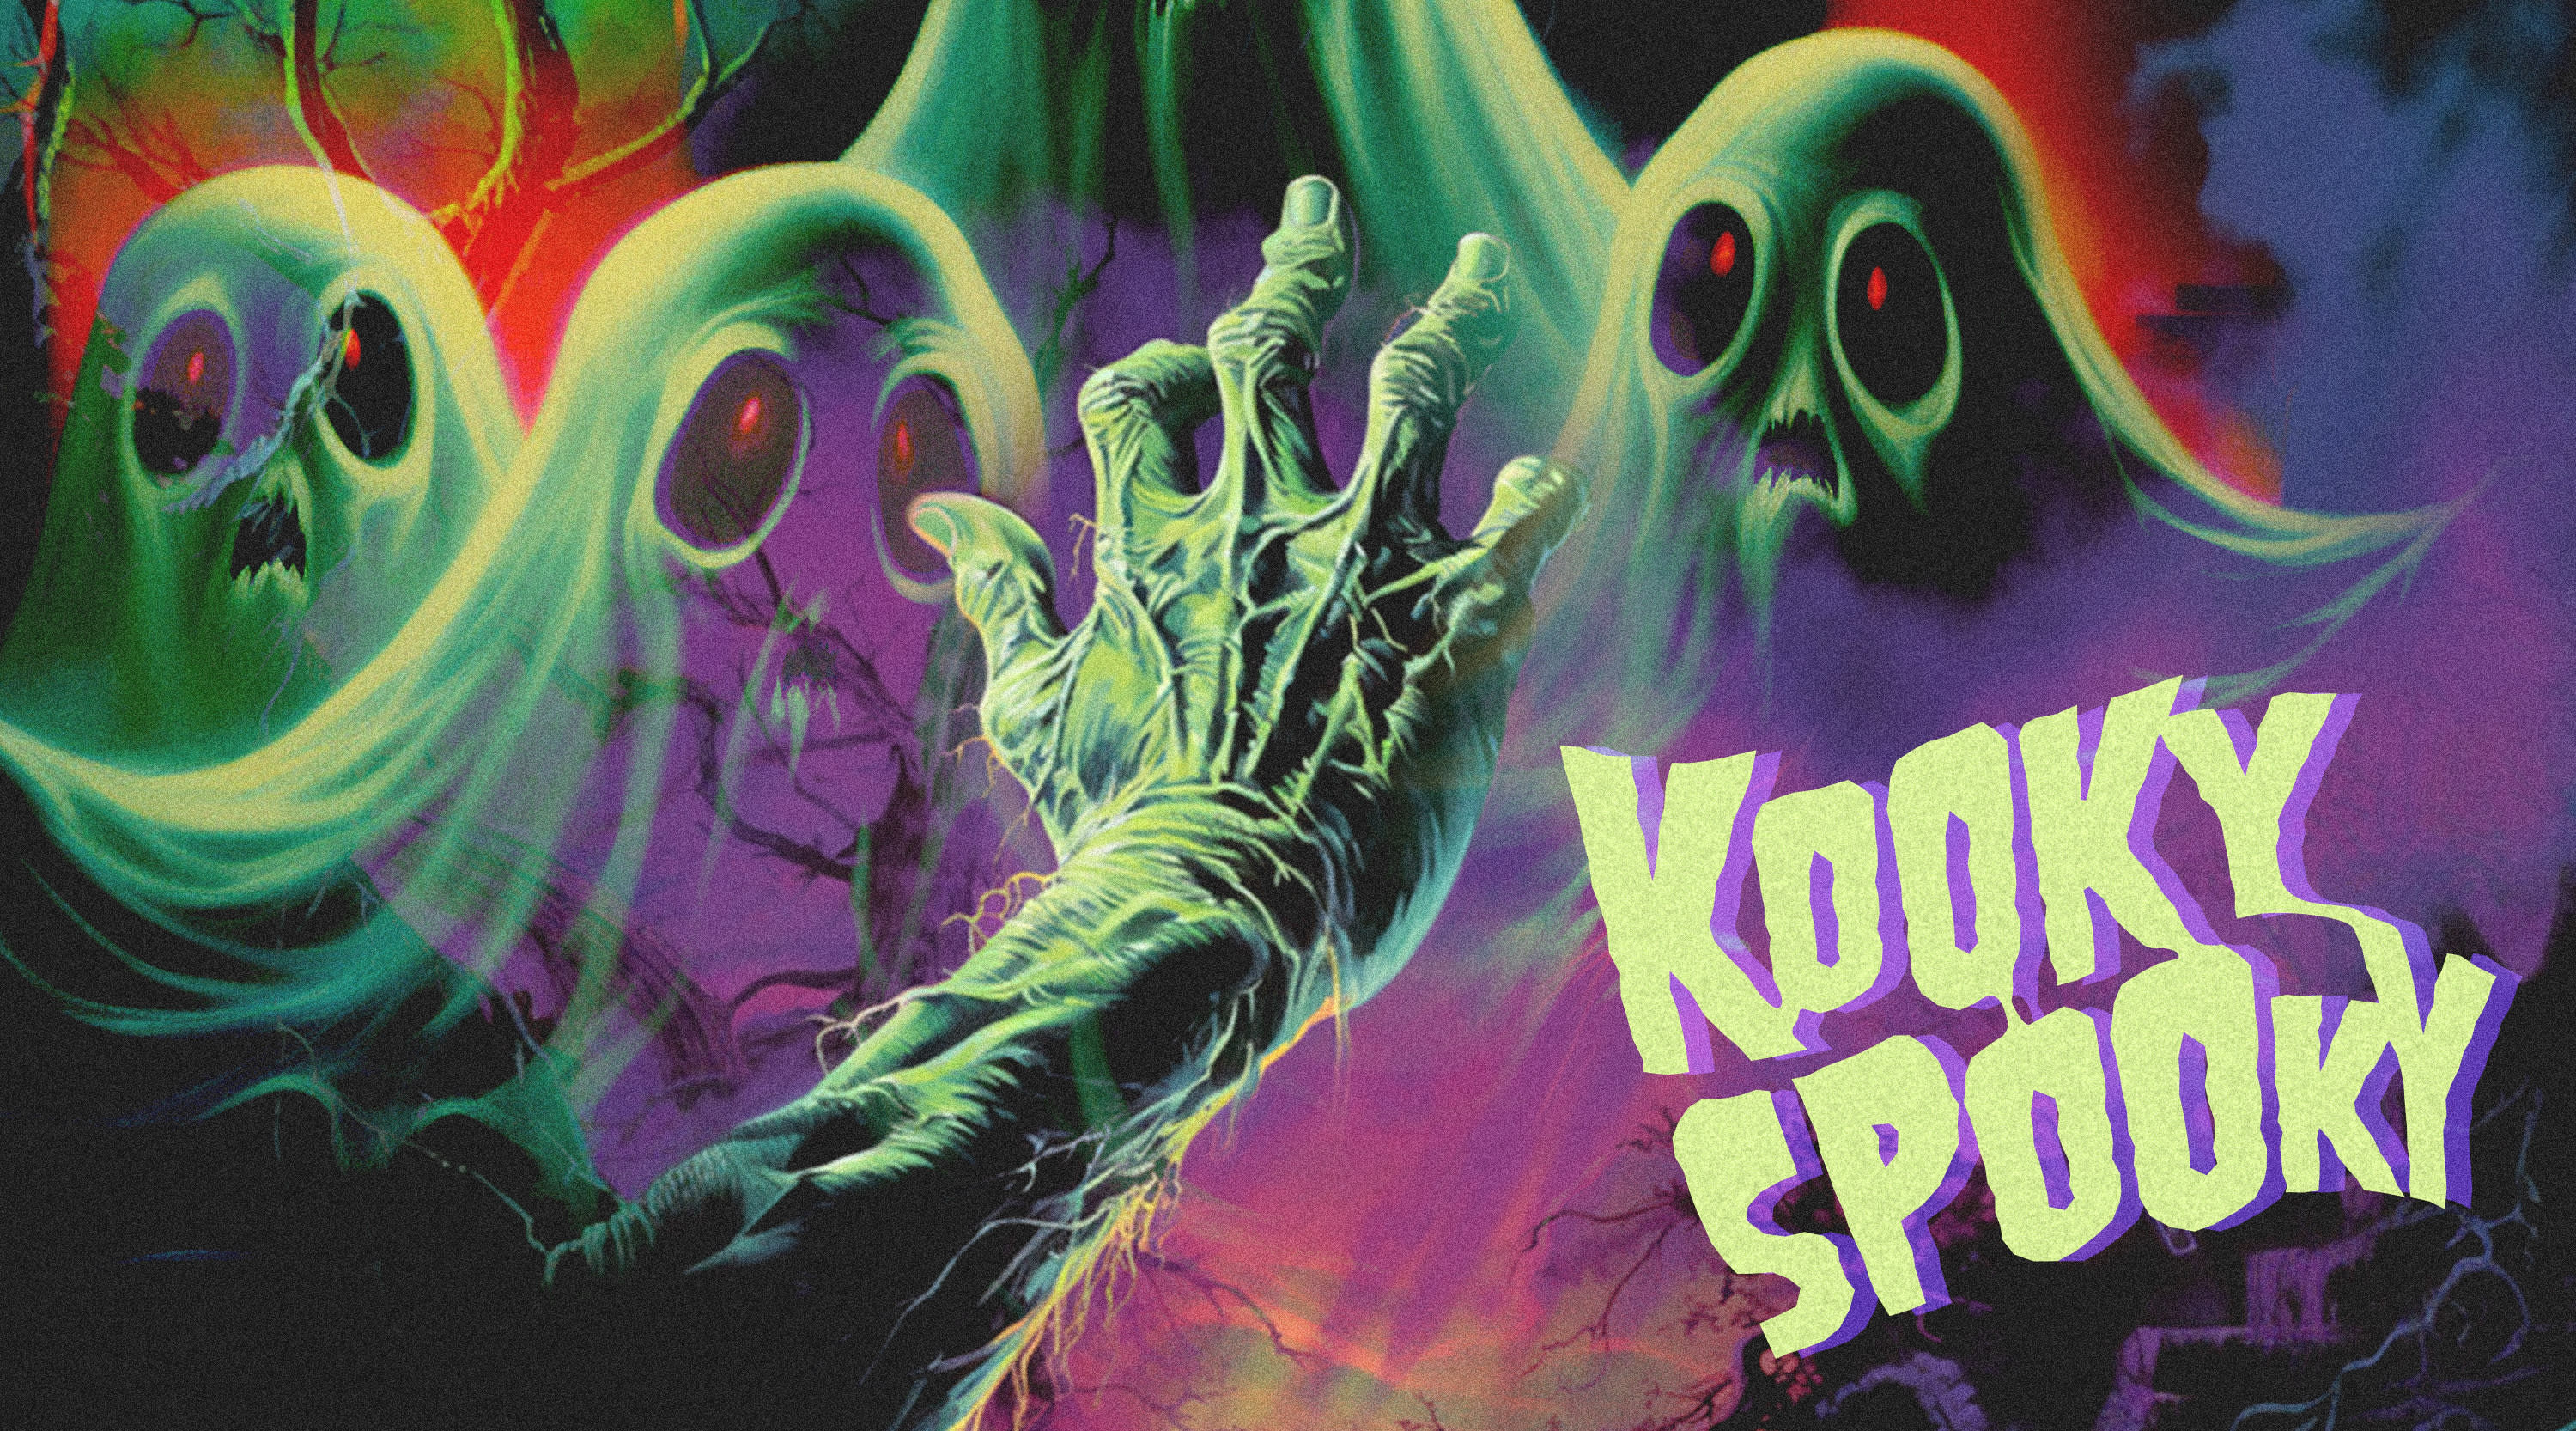 Kooky Spooky